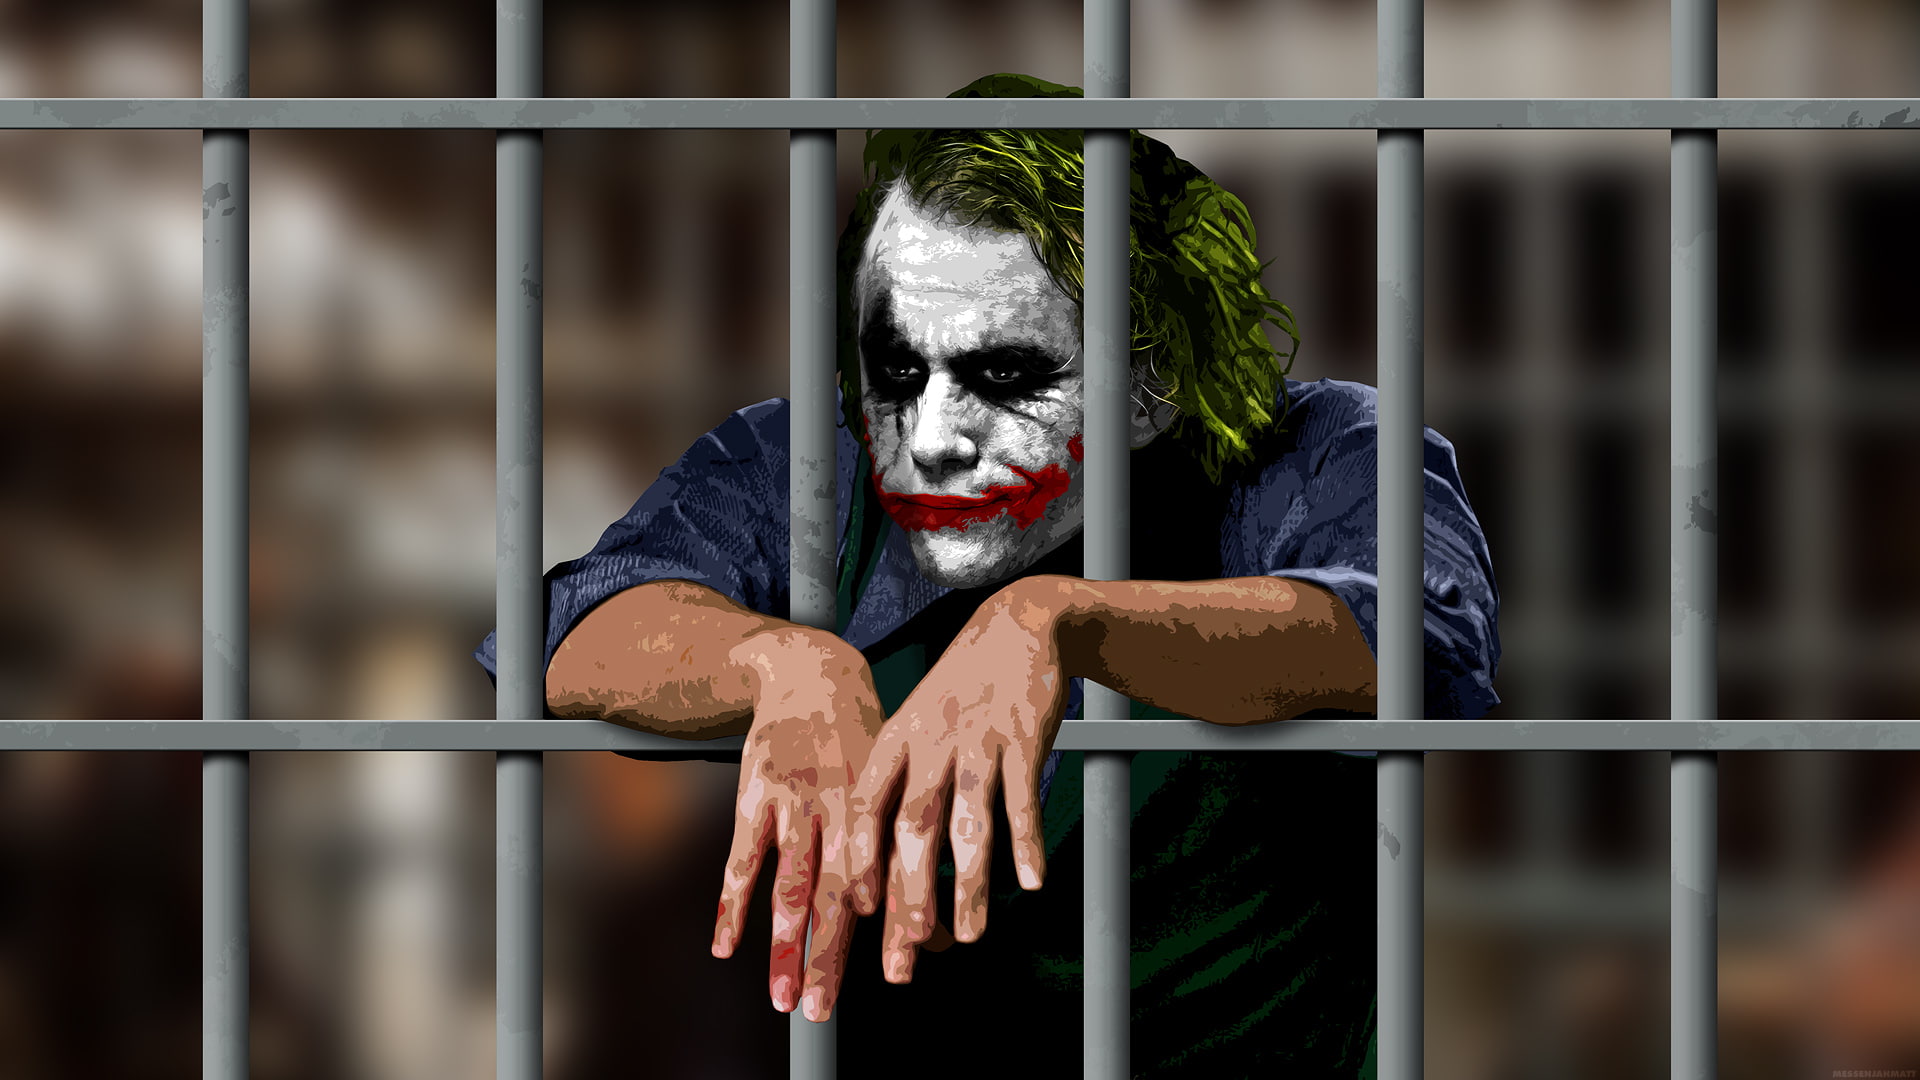 joker jail batman the dark knight hd wallpaper 2970a80d61faedeb0617688ff071166d